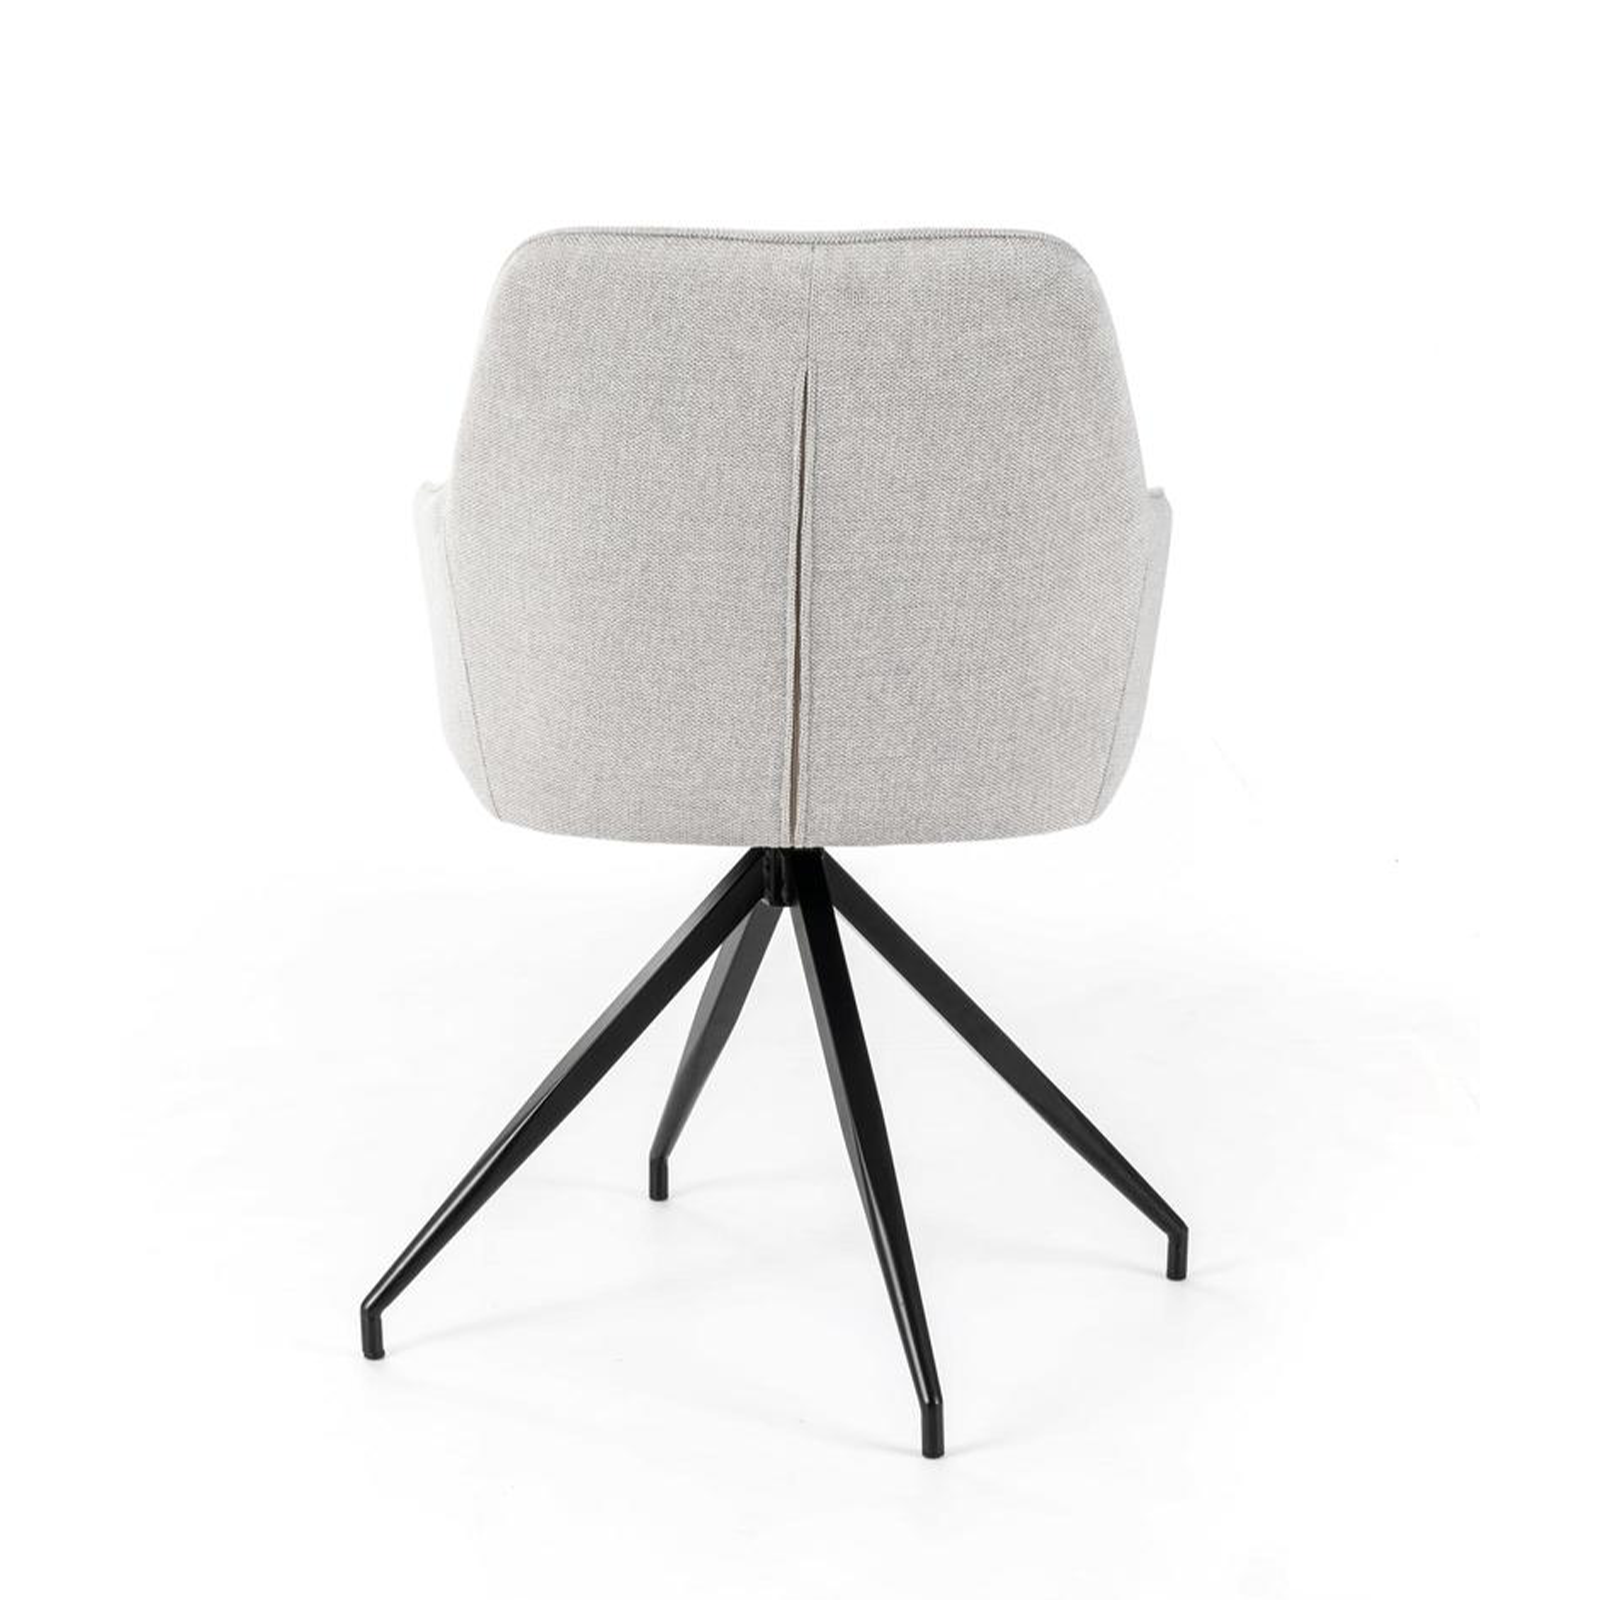 Set di sedie imbottite "Anemone" poltrone moderne da soggiorno in tessuto